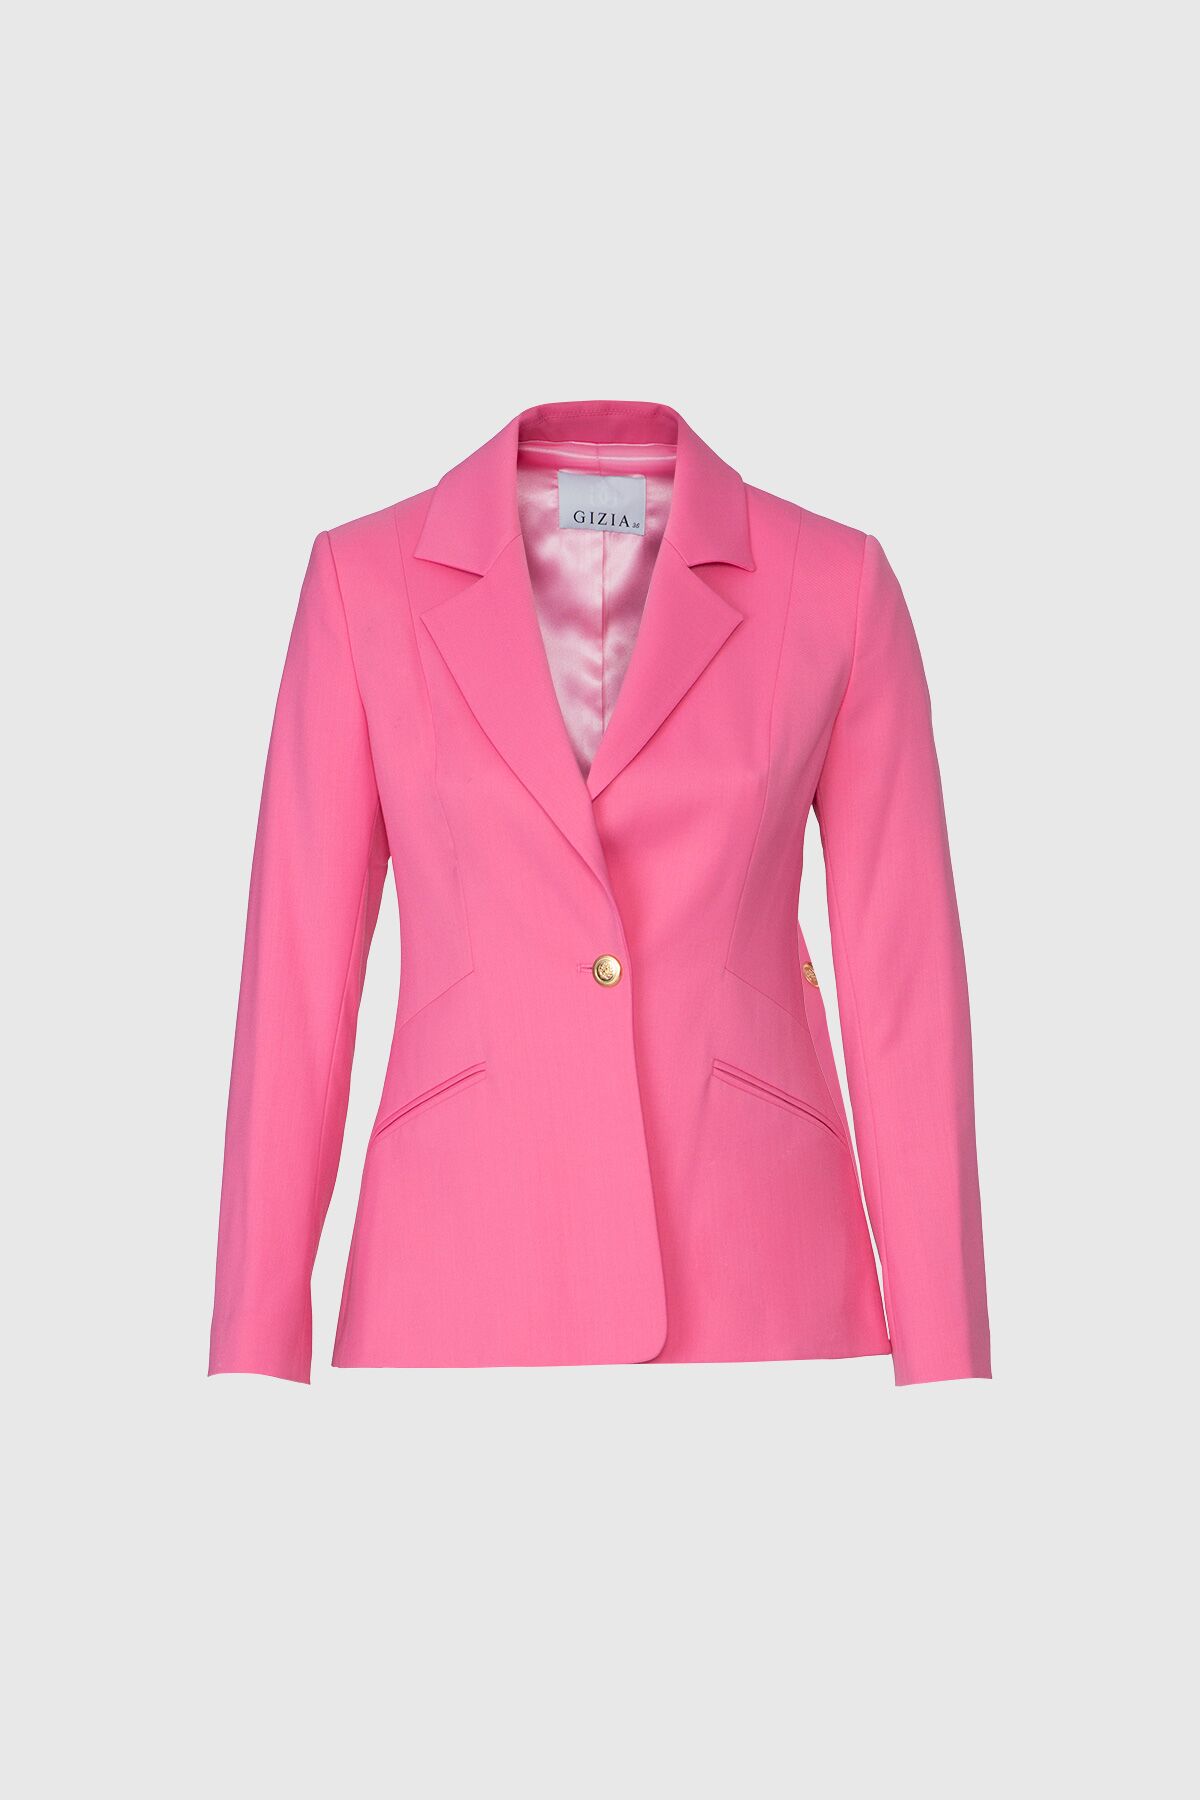  GIZIA - Fit Cut Blazer Single Button Pink Jacket